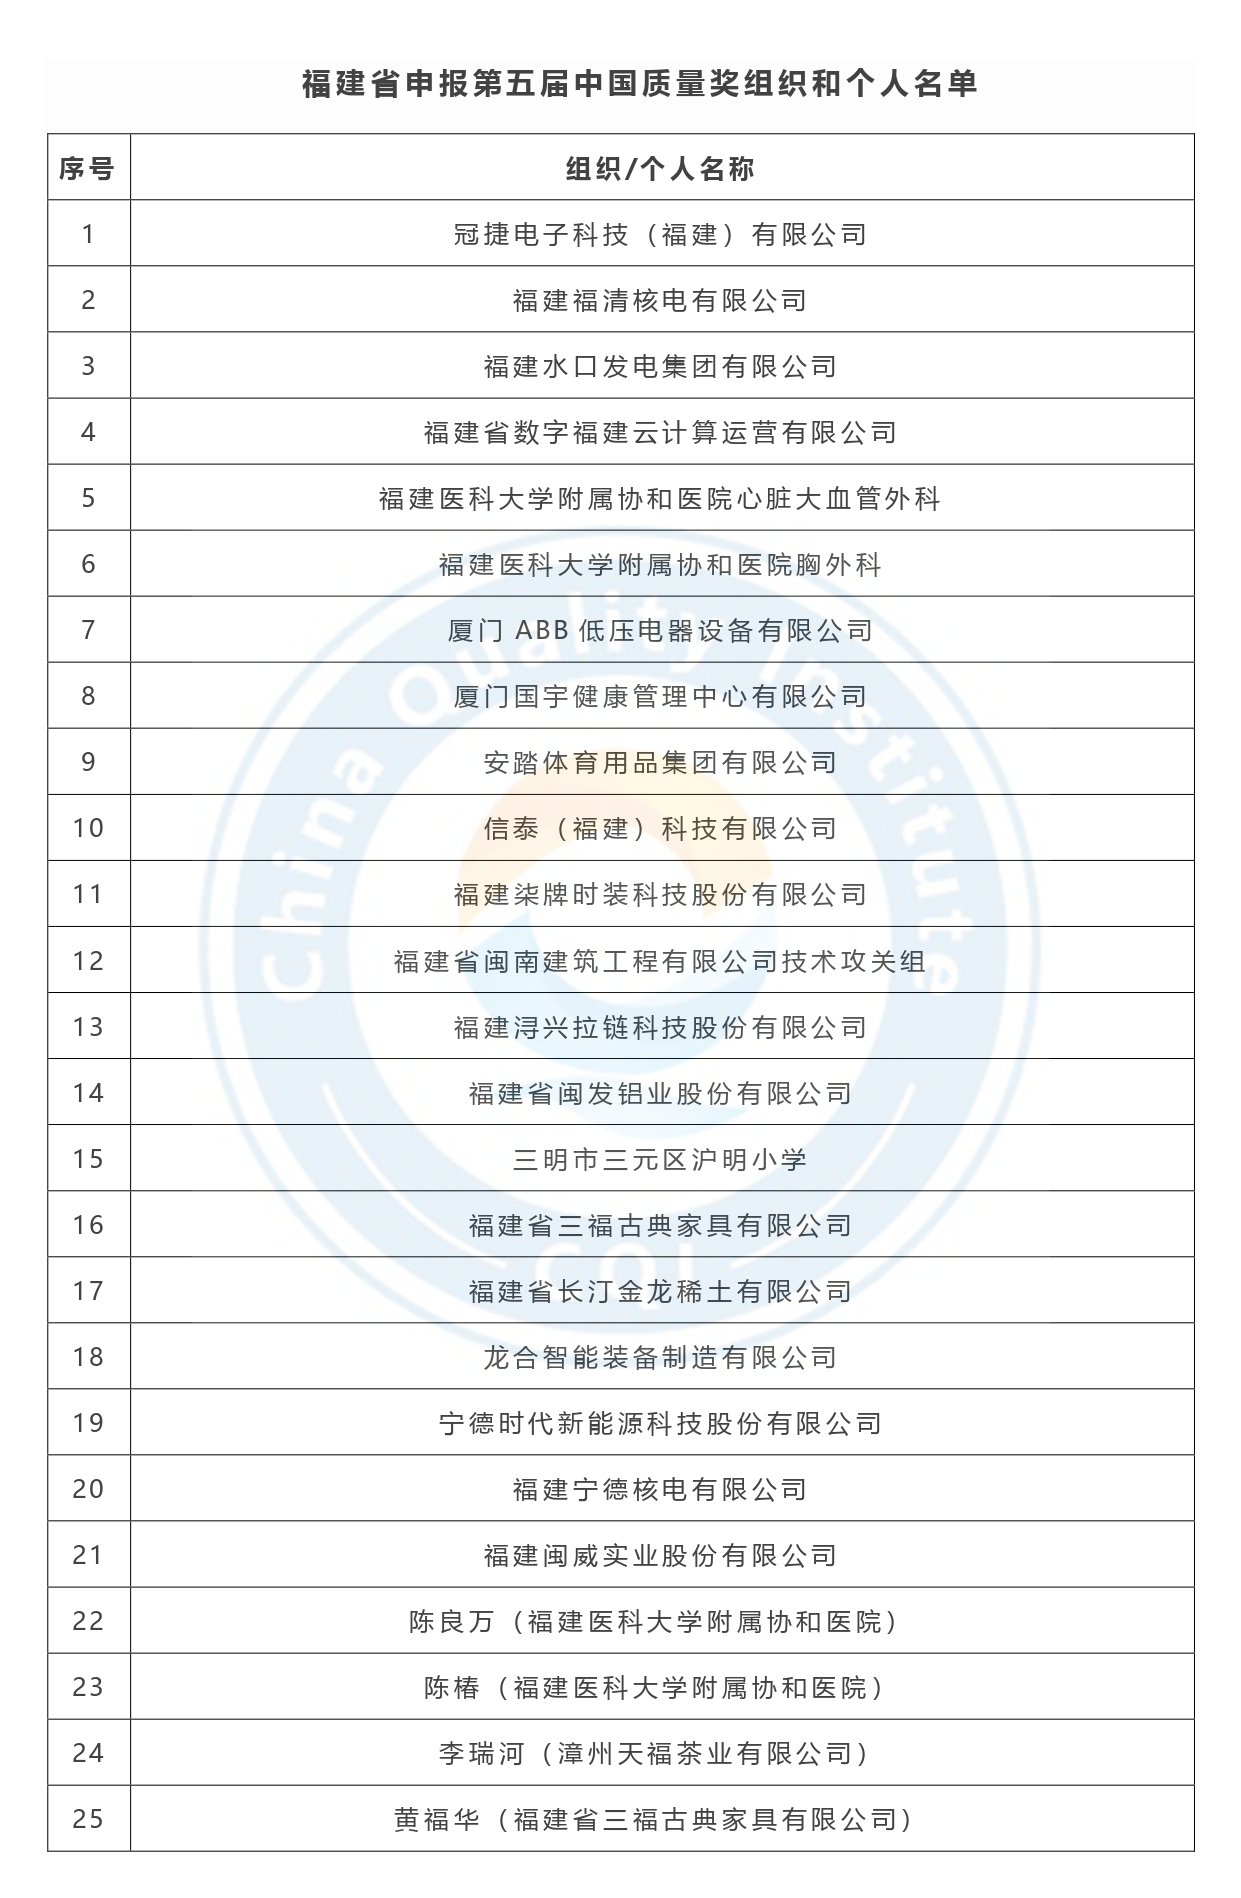 第五届中国质量奖申报名单公示-福建省.jpg